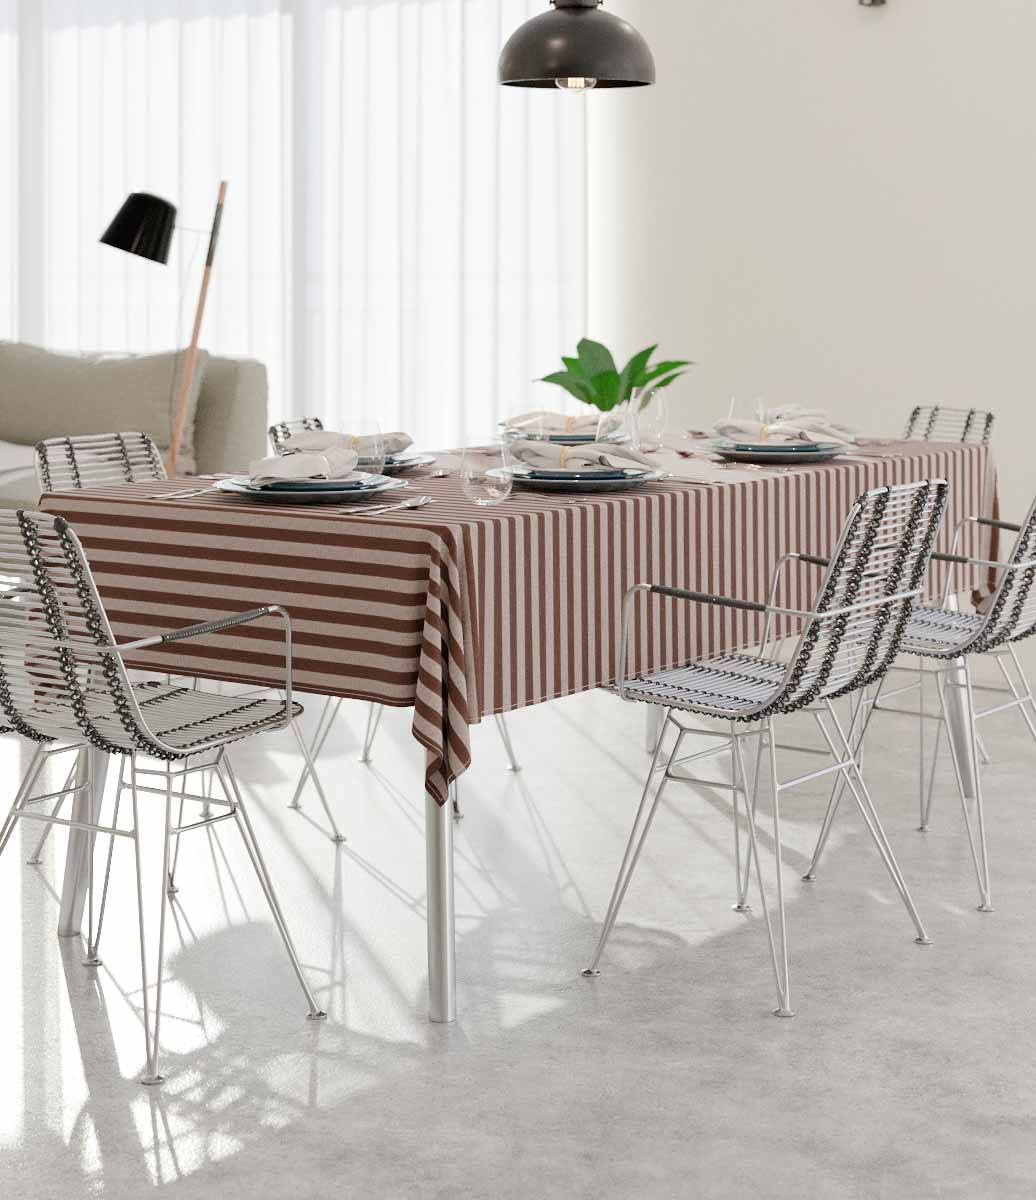 ambiente minimalista todo cinza e neutro com bela toalha de mesa marrom listrada 